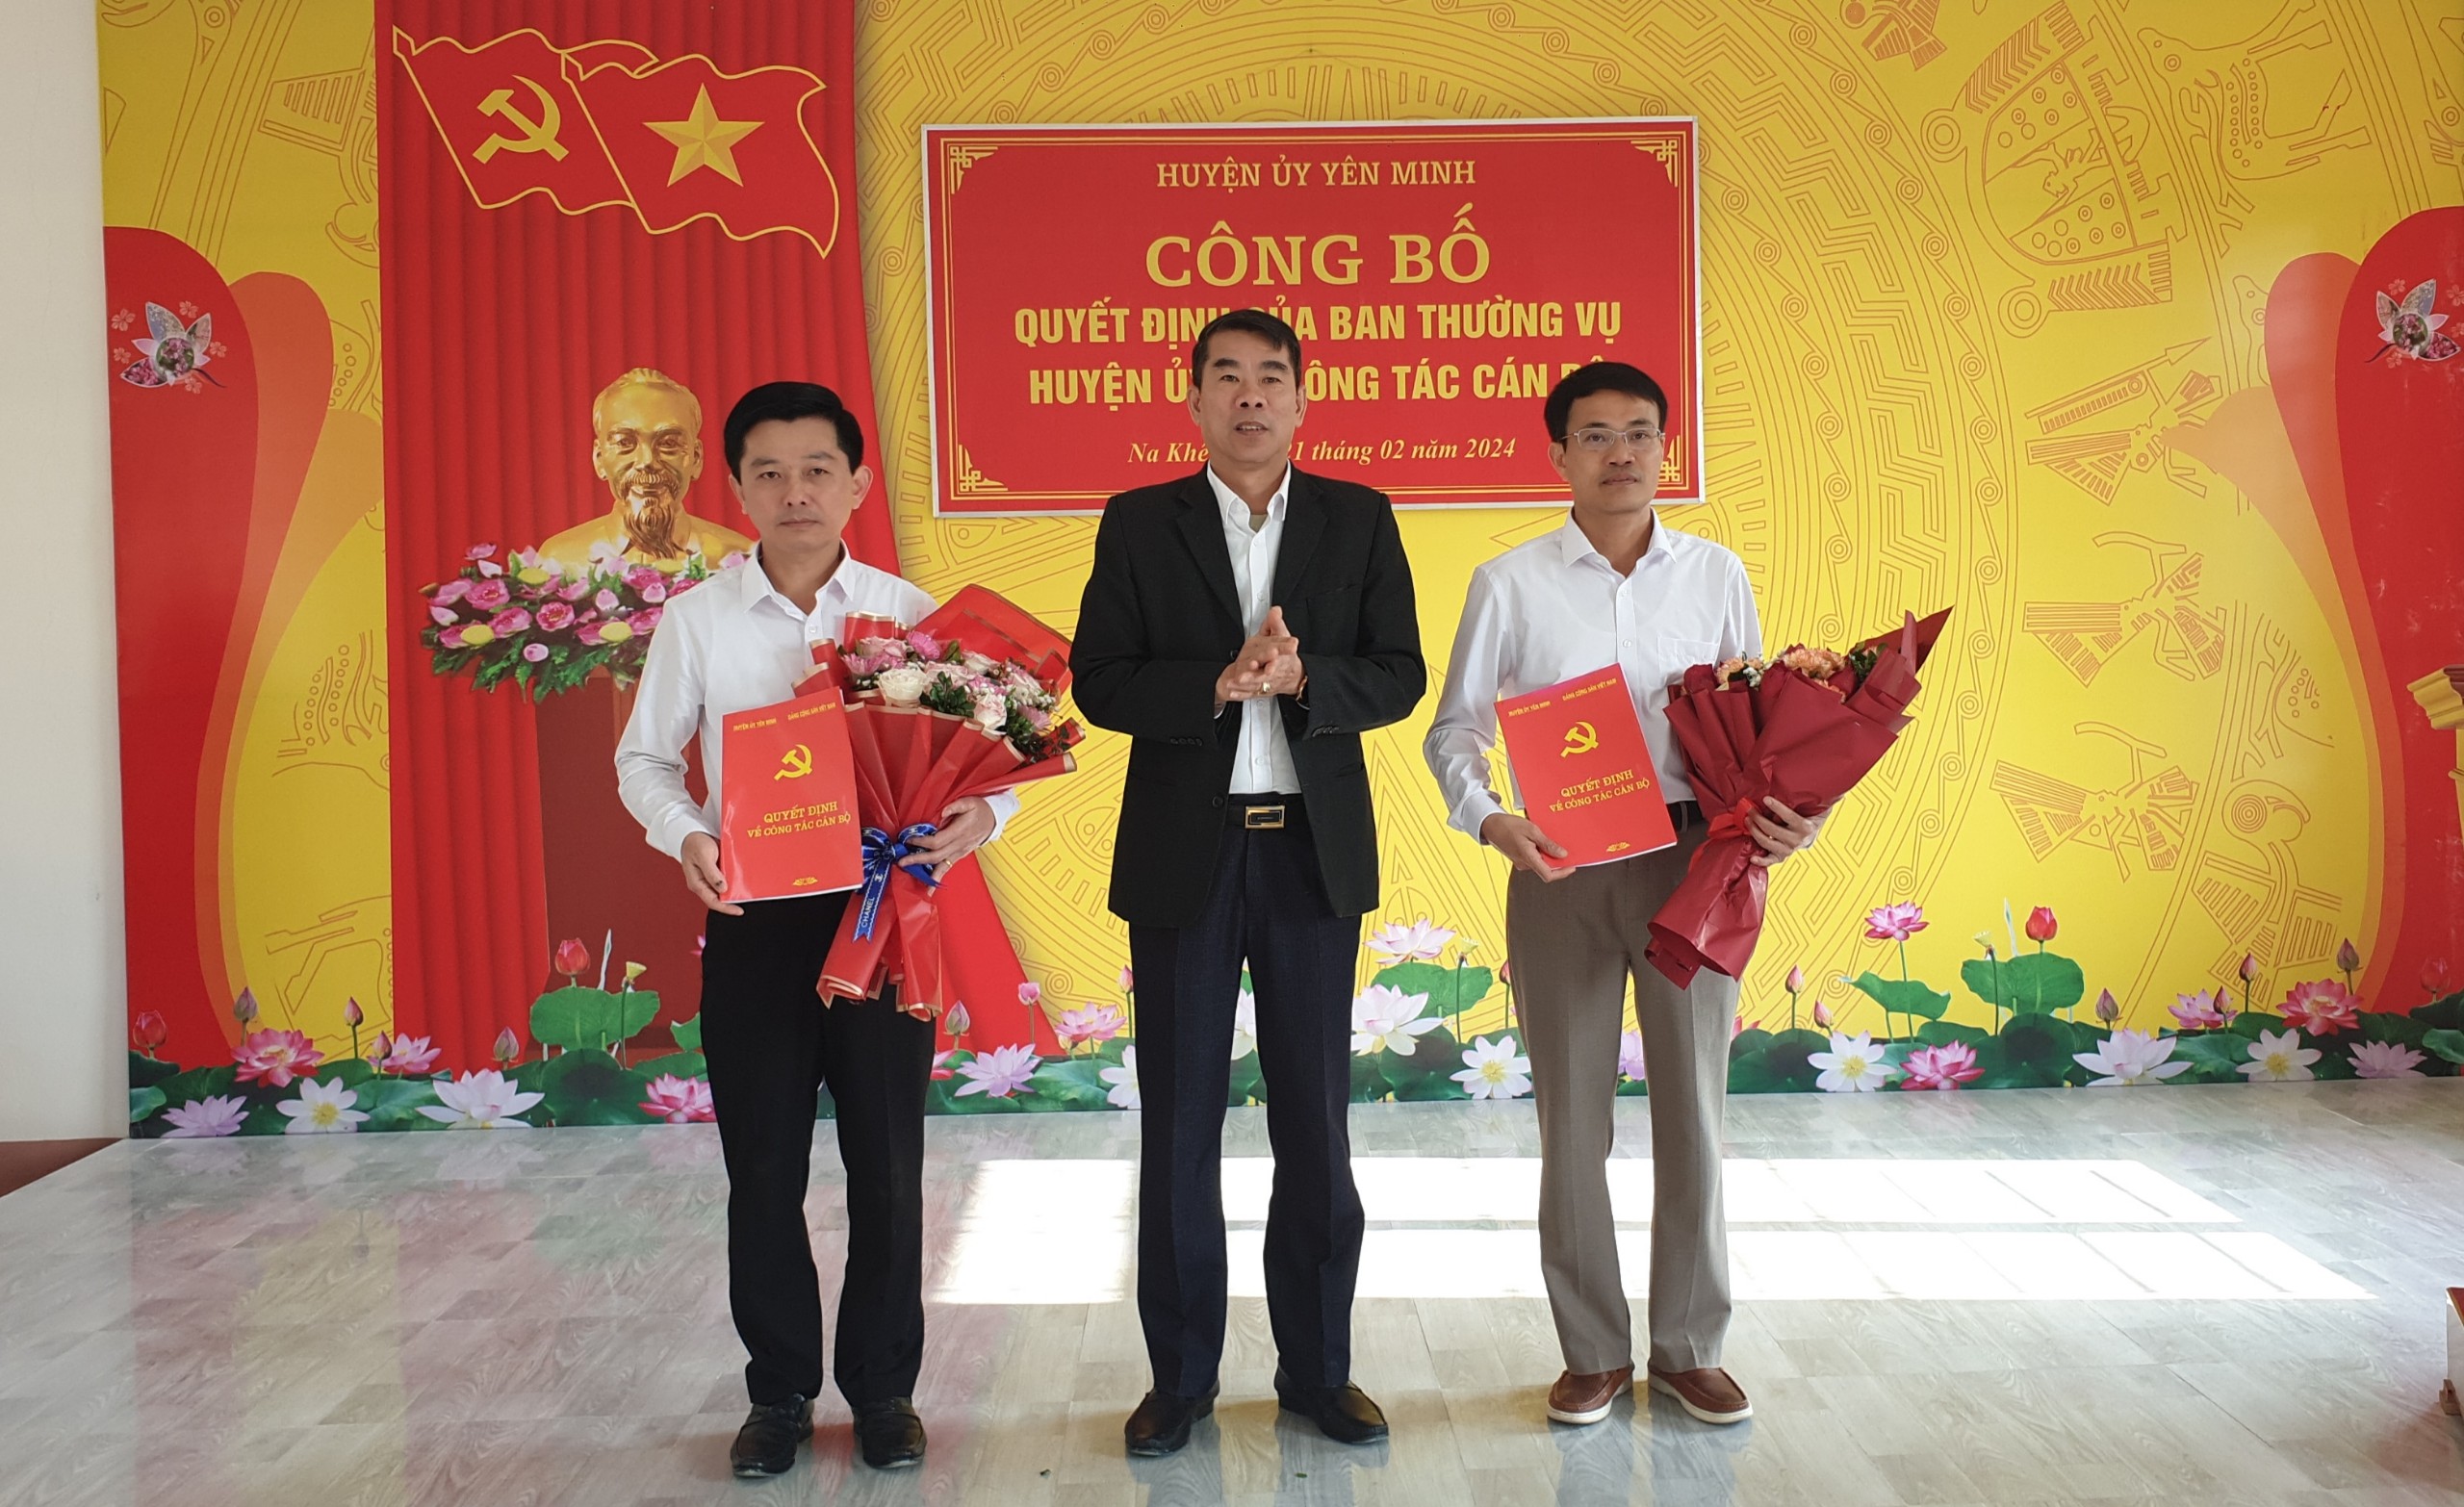 Huyện ủy Yên Minh công bố các quyết định về công tác cán bộ